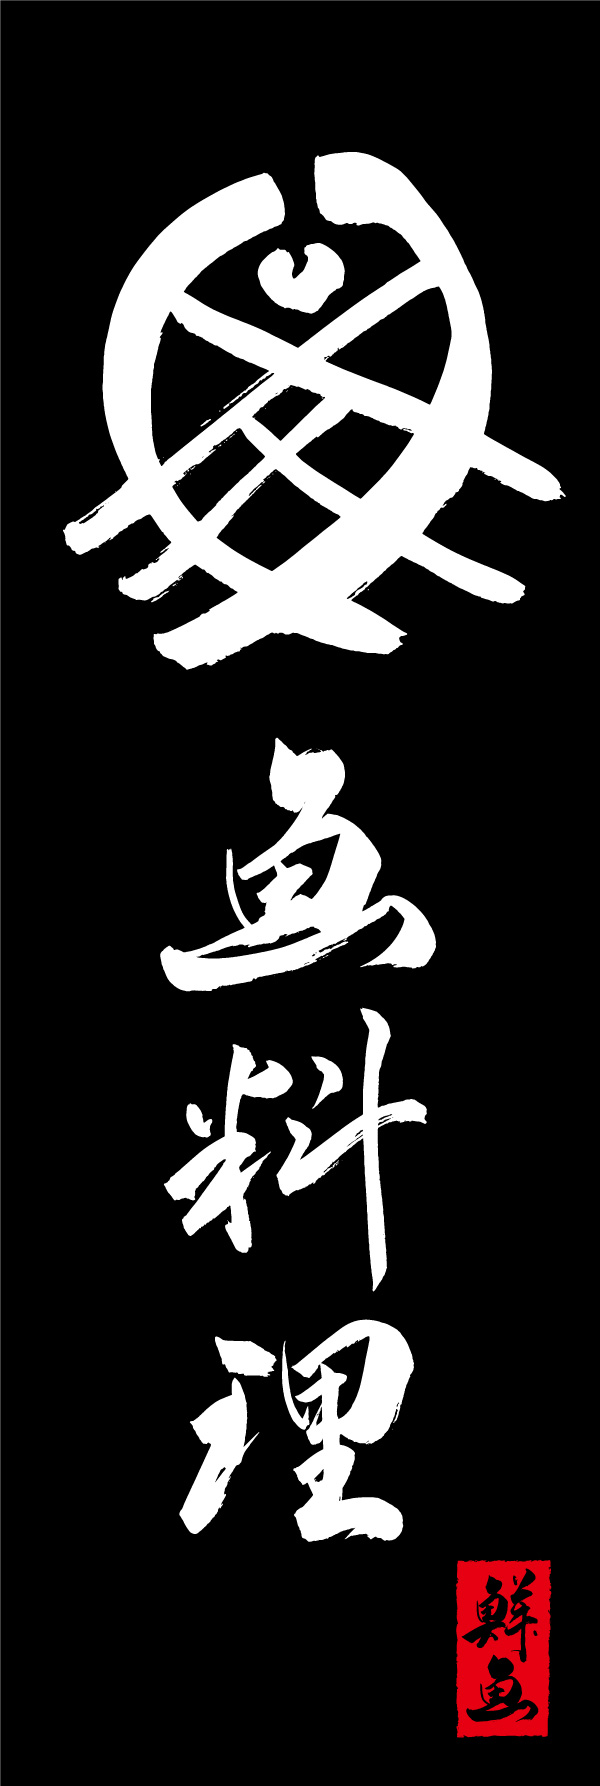 魚料理 156_05 「魚料理」の幟です。江戸文字職人 加藤木大介氏による、手書きの筆文字です。完全書き下ろし、唯一無二の幟は当店だけのオリジナル商品です。（Y.M）